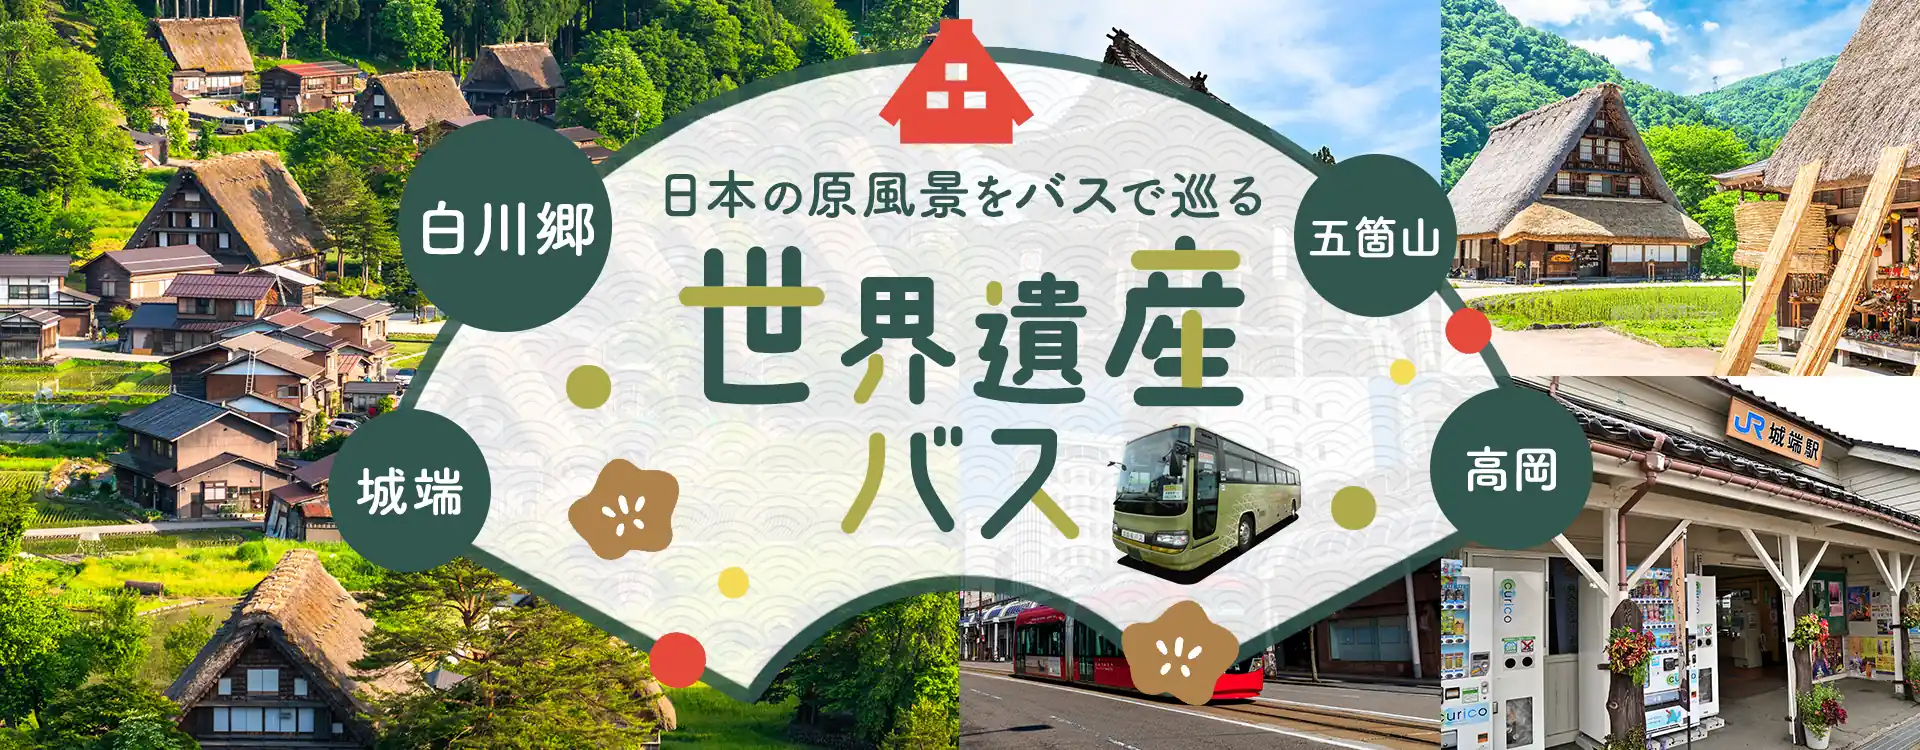 日本の原風景をバスで巡る 白川郷・五箇山・高岡・城端 世界遺産バス